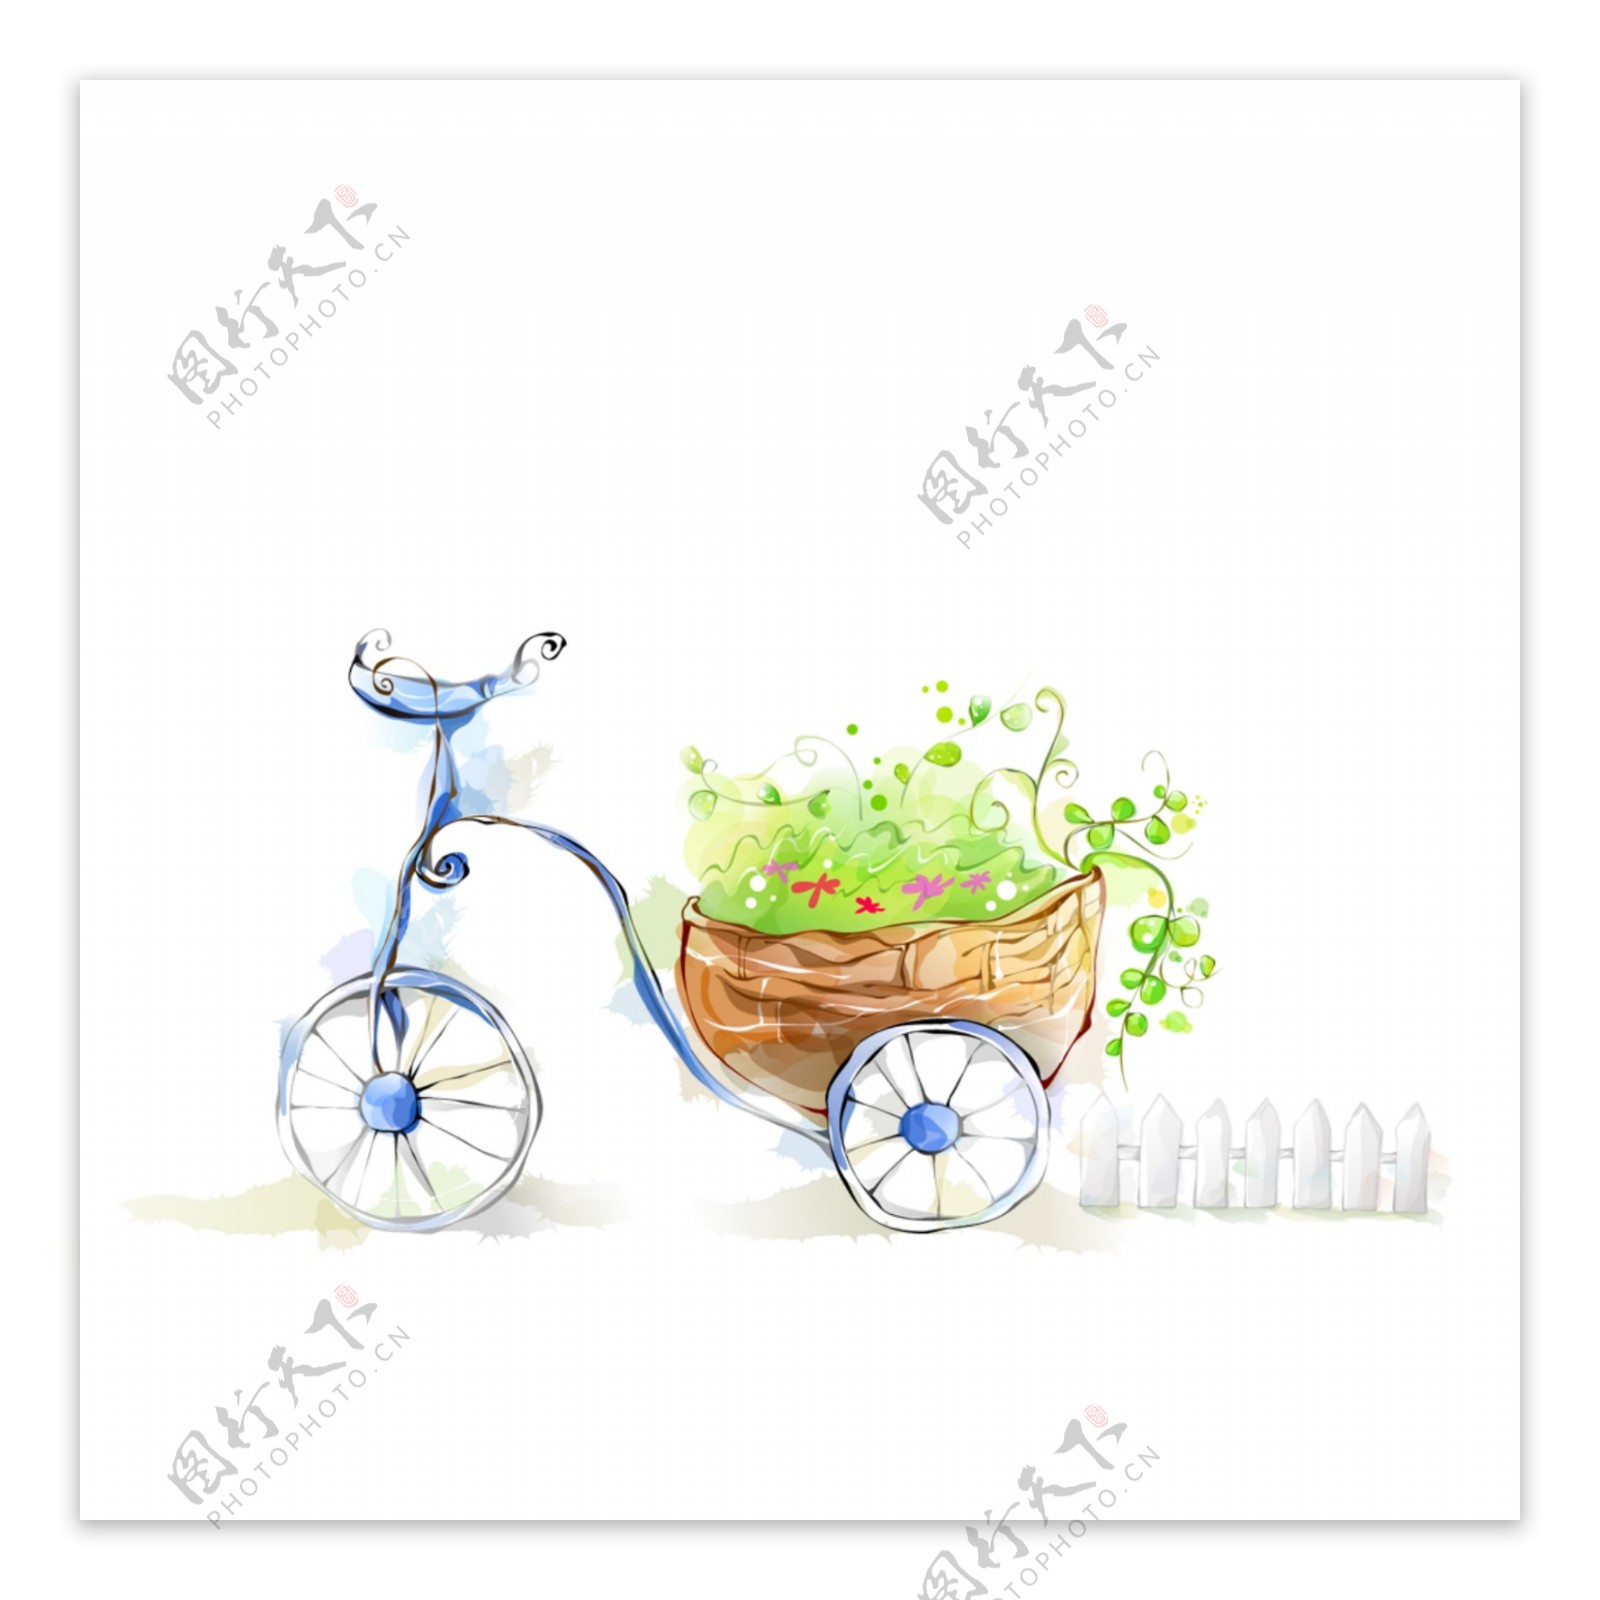 自行车花盆